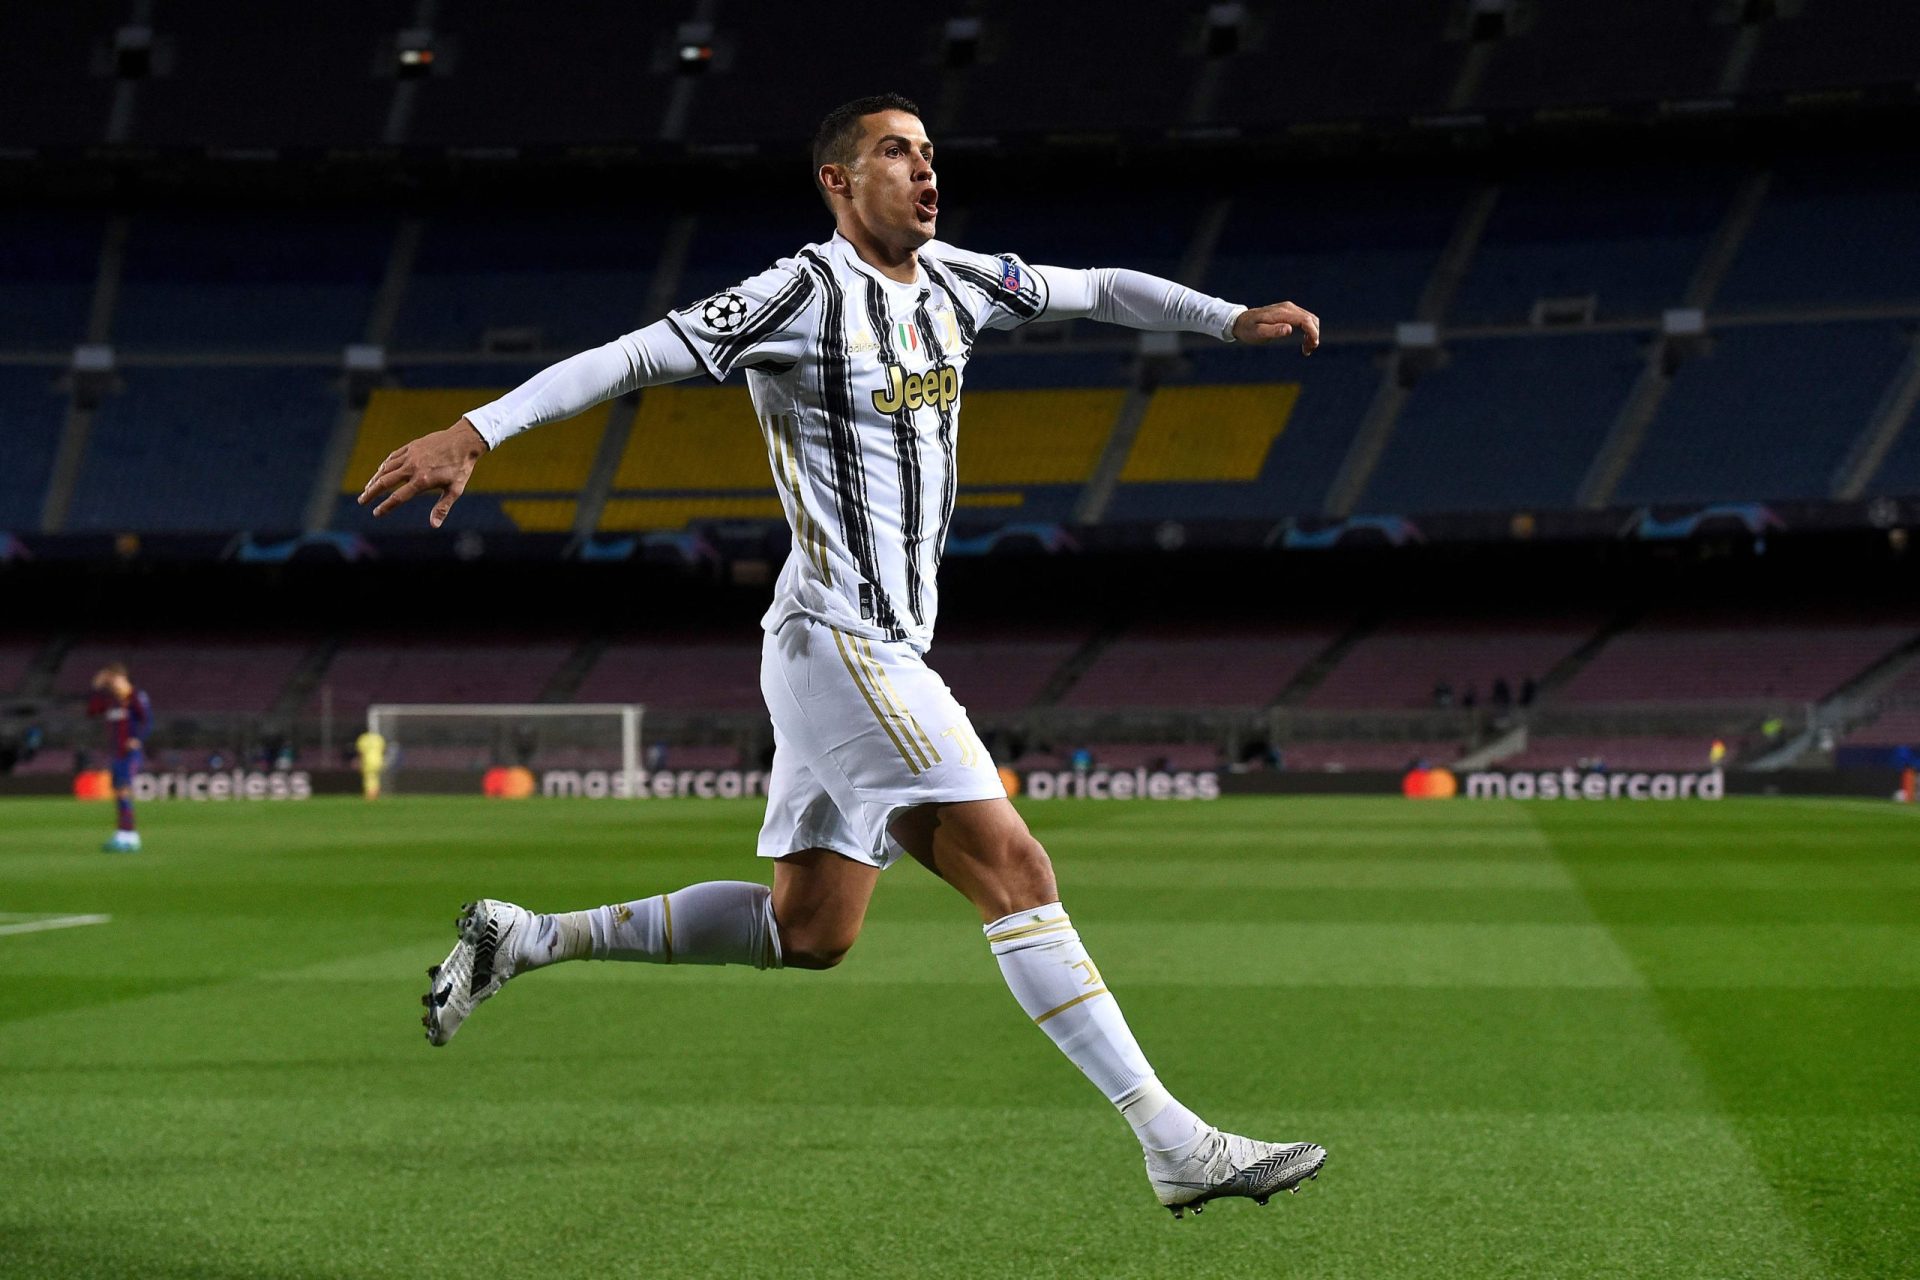 Allegri confirma saída de Cristiano Ronaldo: “Disse-me que não tem intenção de jogar pela Juventus”